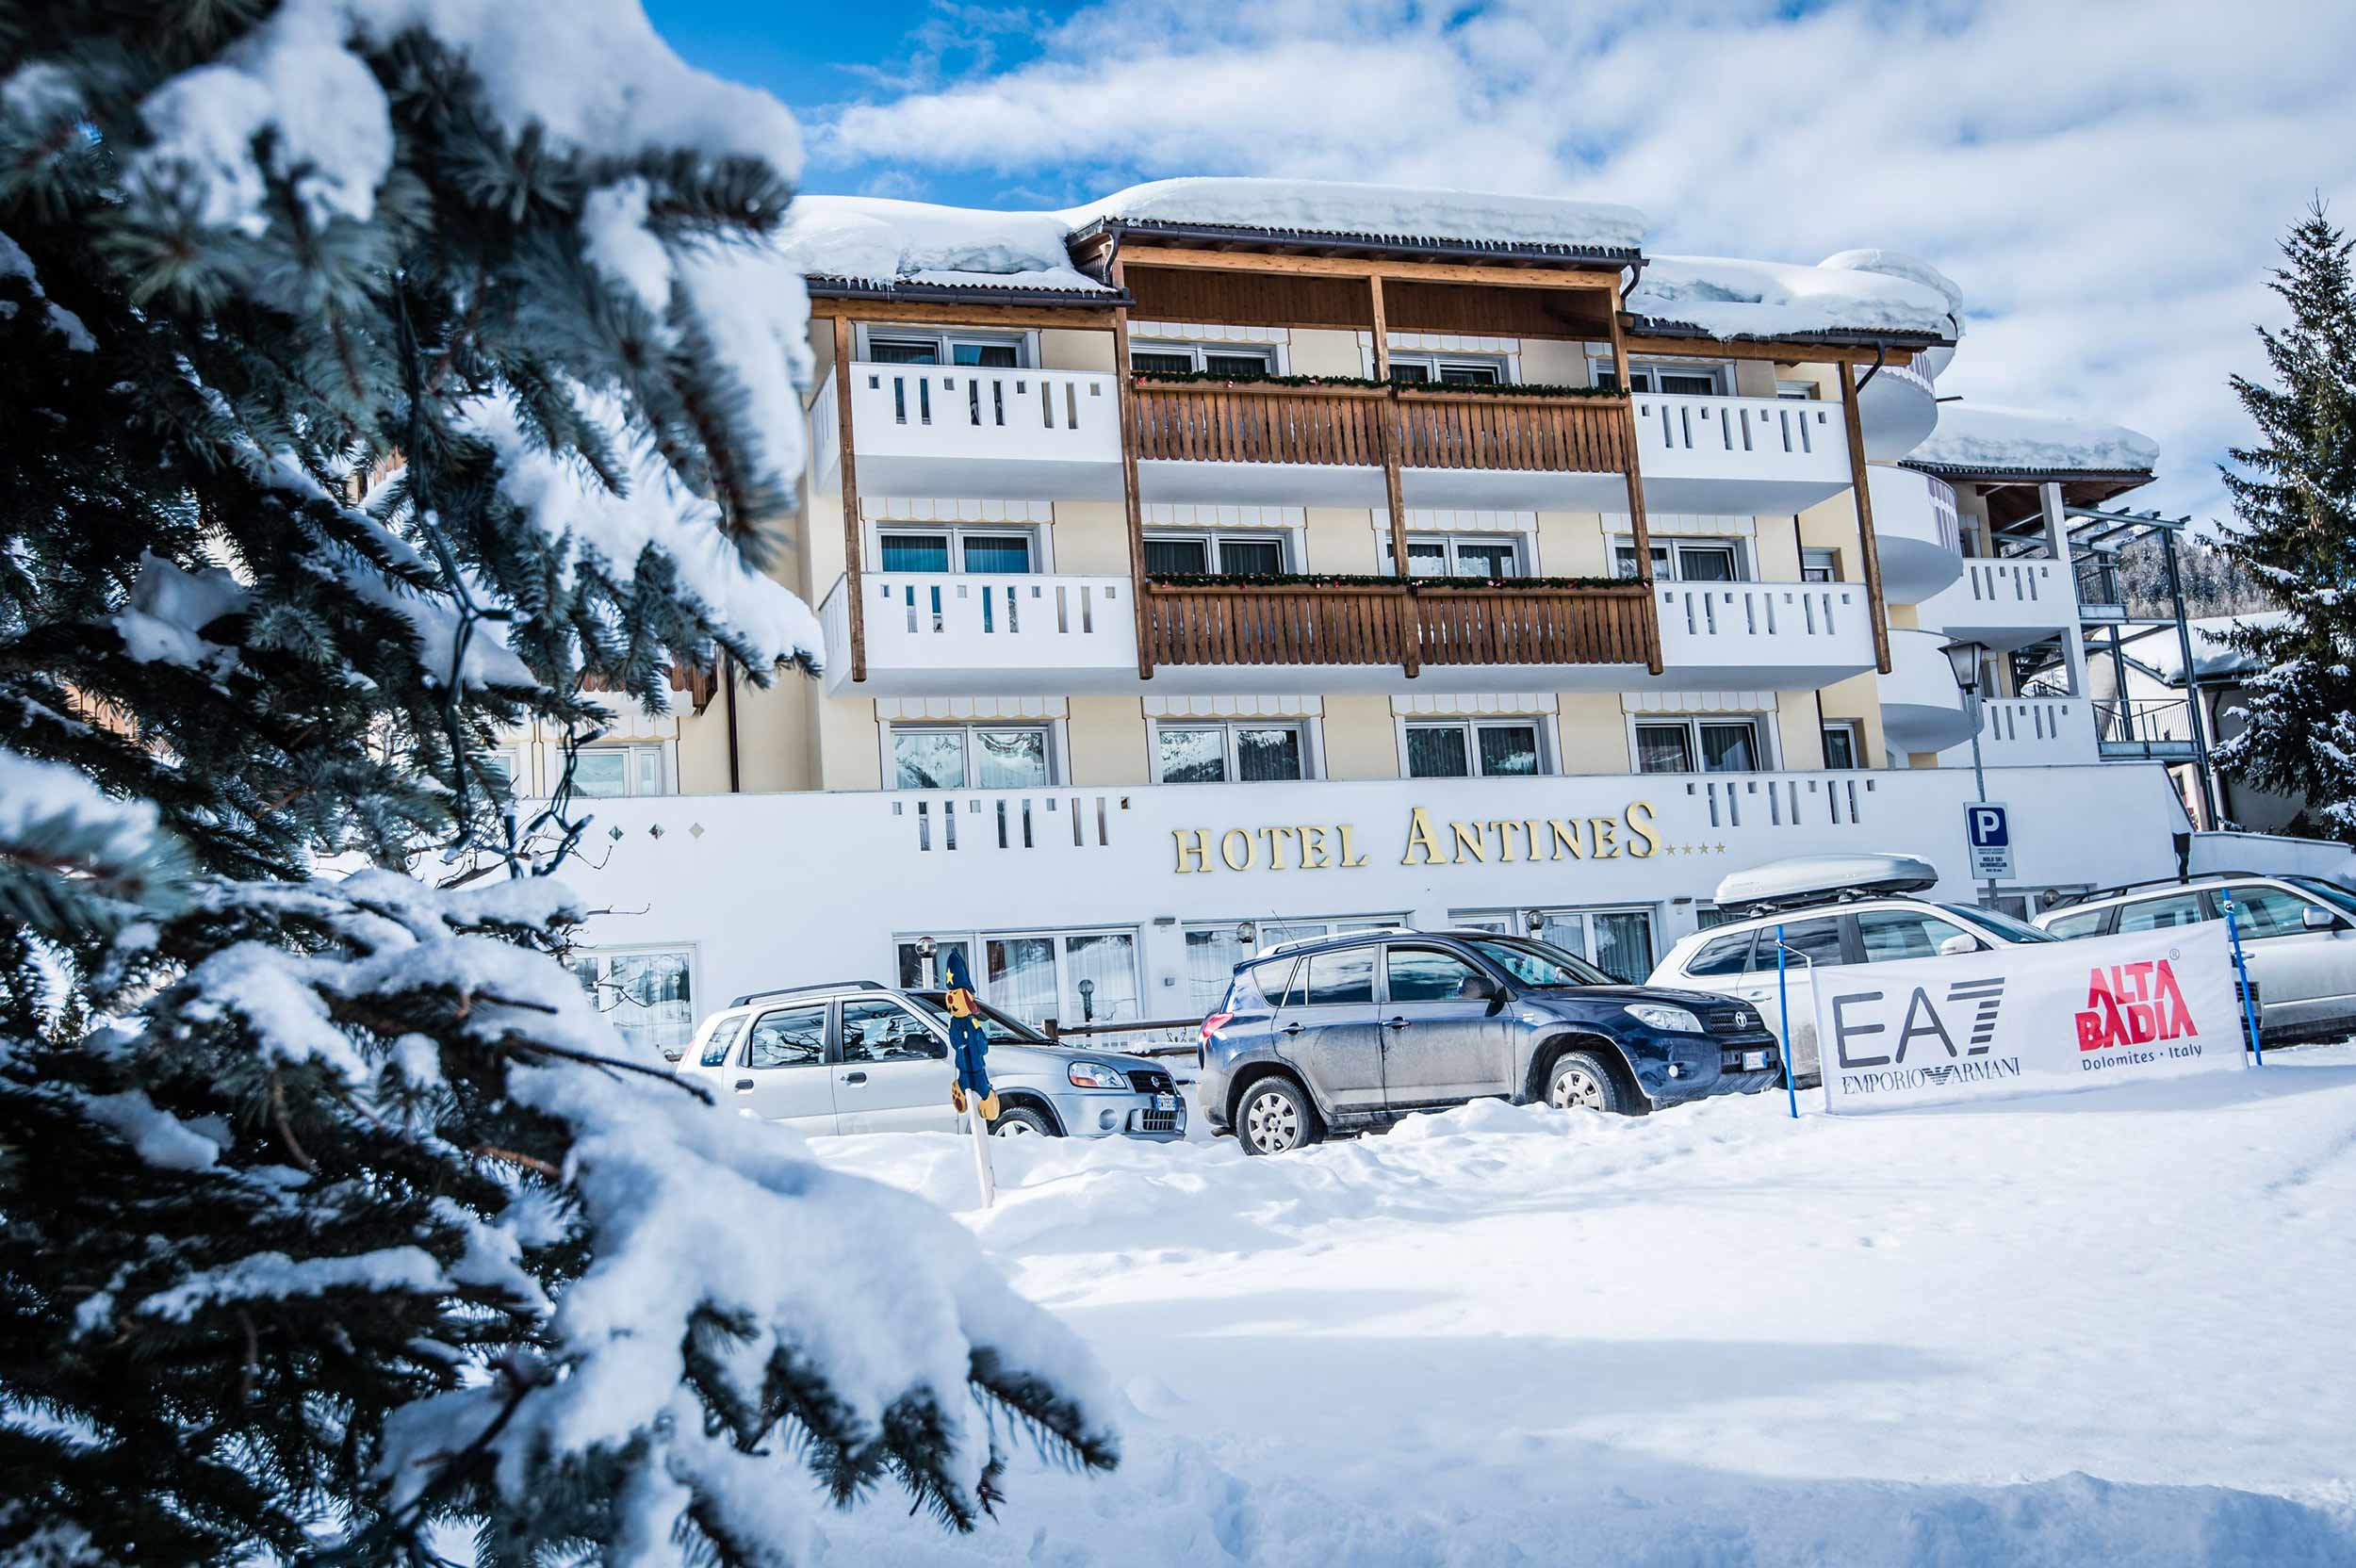 Hotel antines winter alta badia